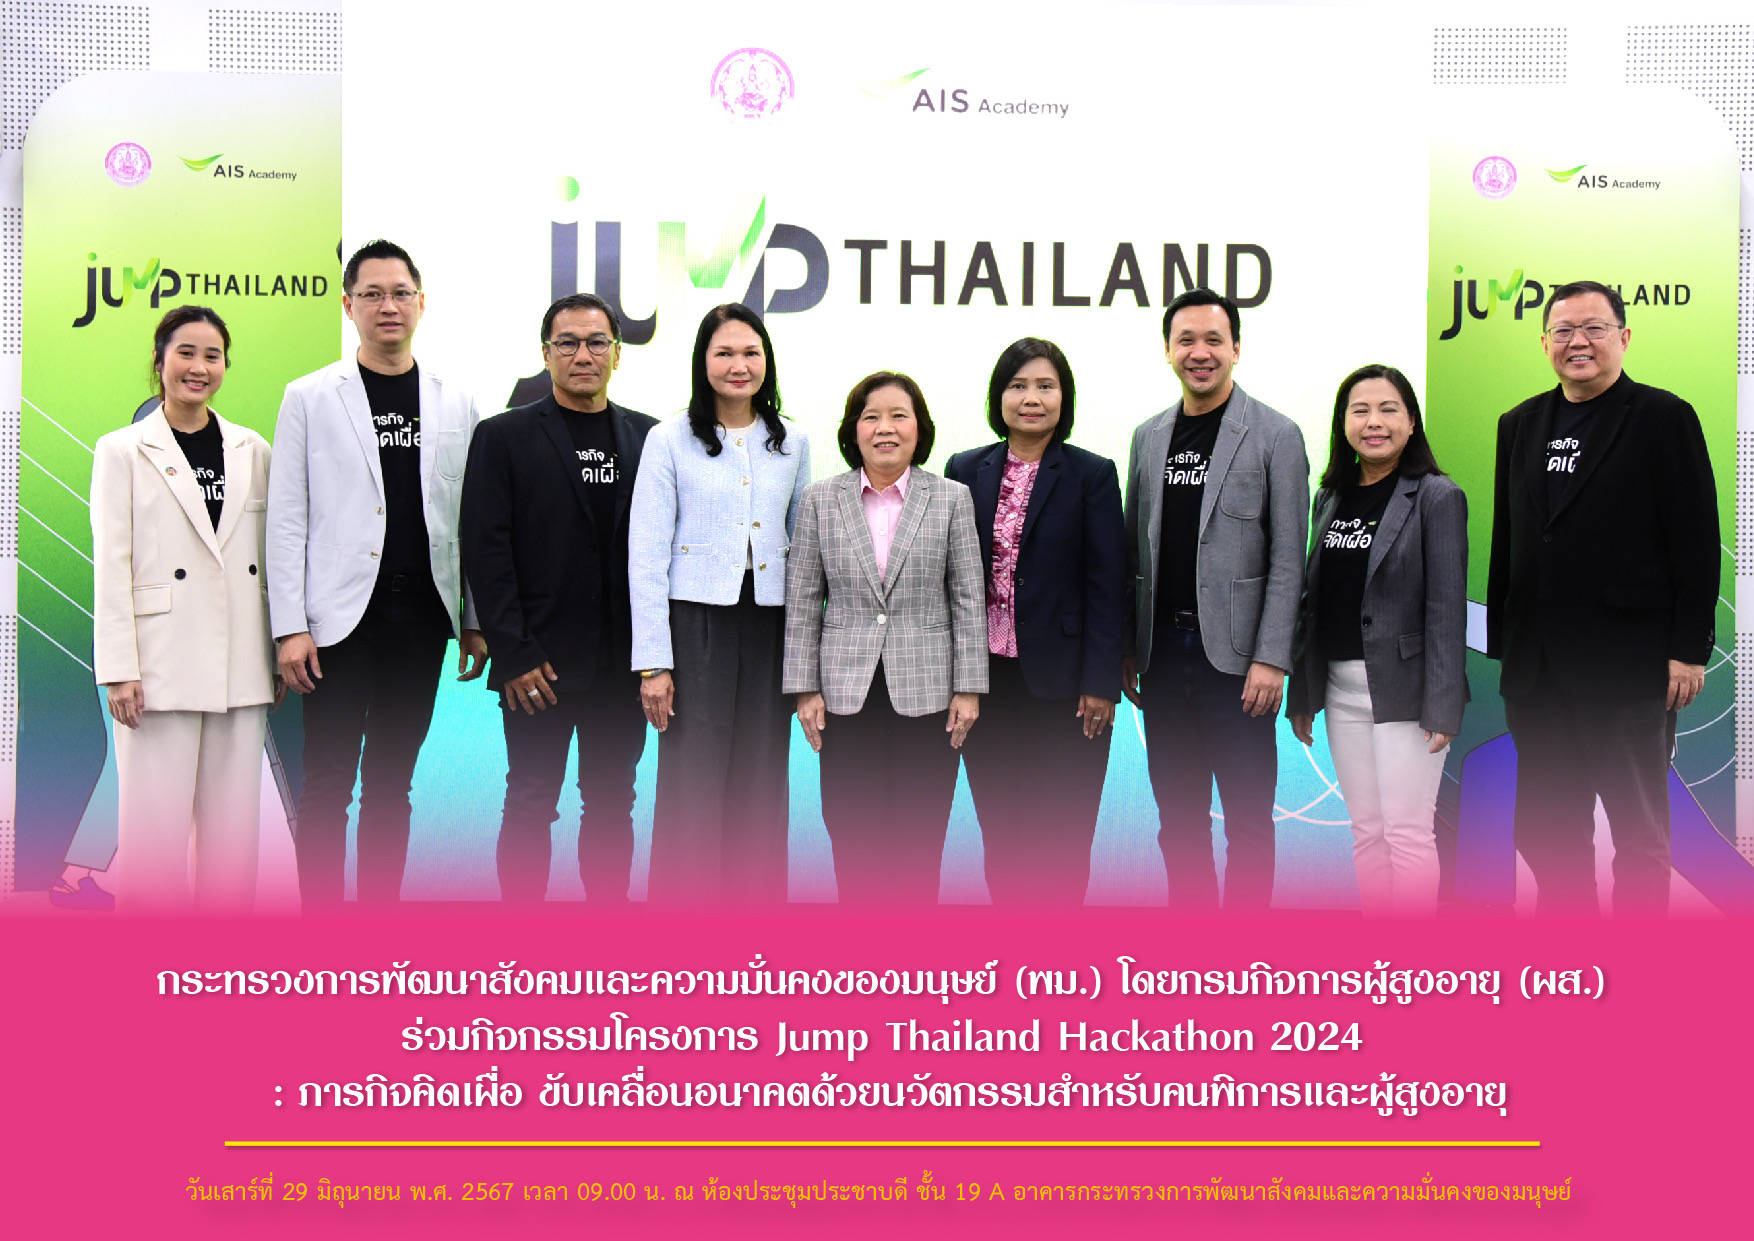 พม. โดยกรมกิจการผู้สูงอายุ (ผส.) ร่วมกิจกรรมโครงการ Jump Thailand Hackathon 2024 : ภารกิจคิดเผื่อ ขับเคลื่อนอนาคตด้วยนวัตกรรมสำหรับคนพิการและผู้สูงอายุ